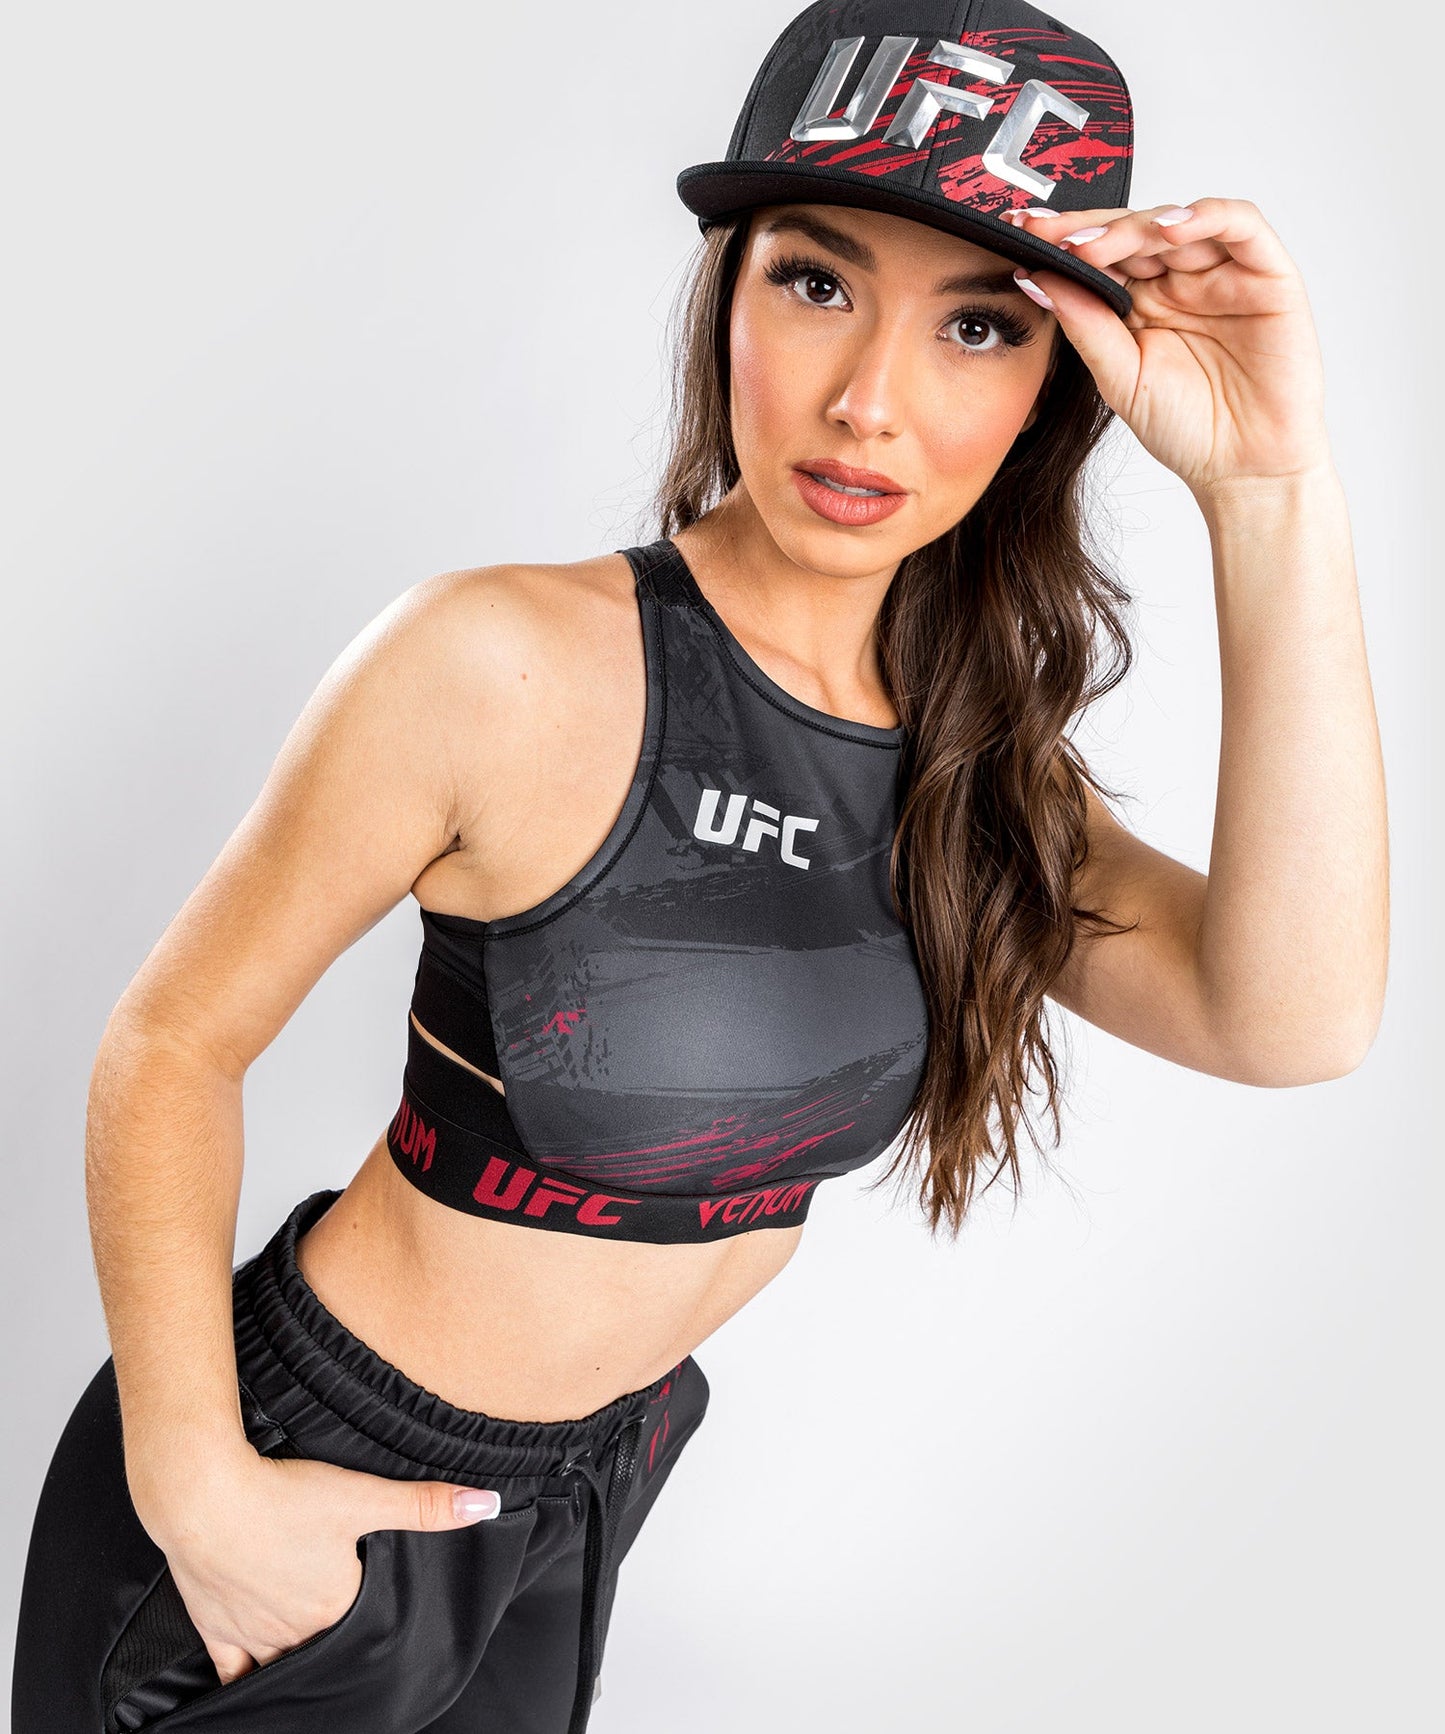 UFC Venum Authentic Fight Week Women’s 2.0 Weigh-in Bra - Black/Red